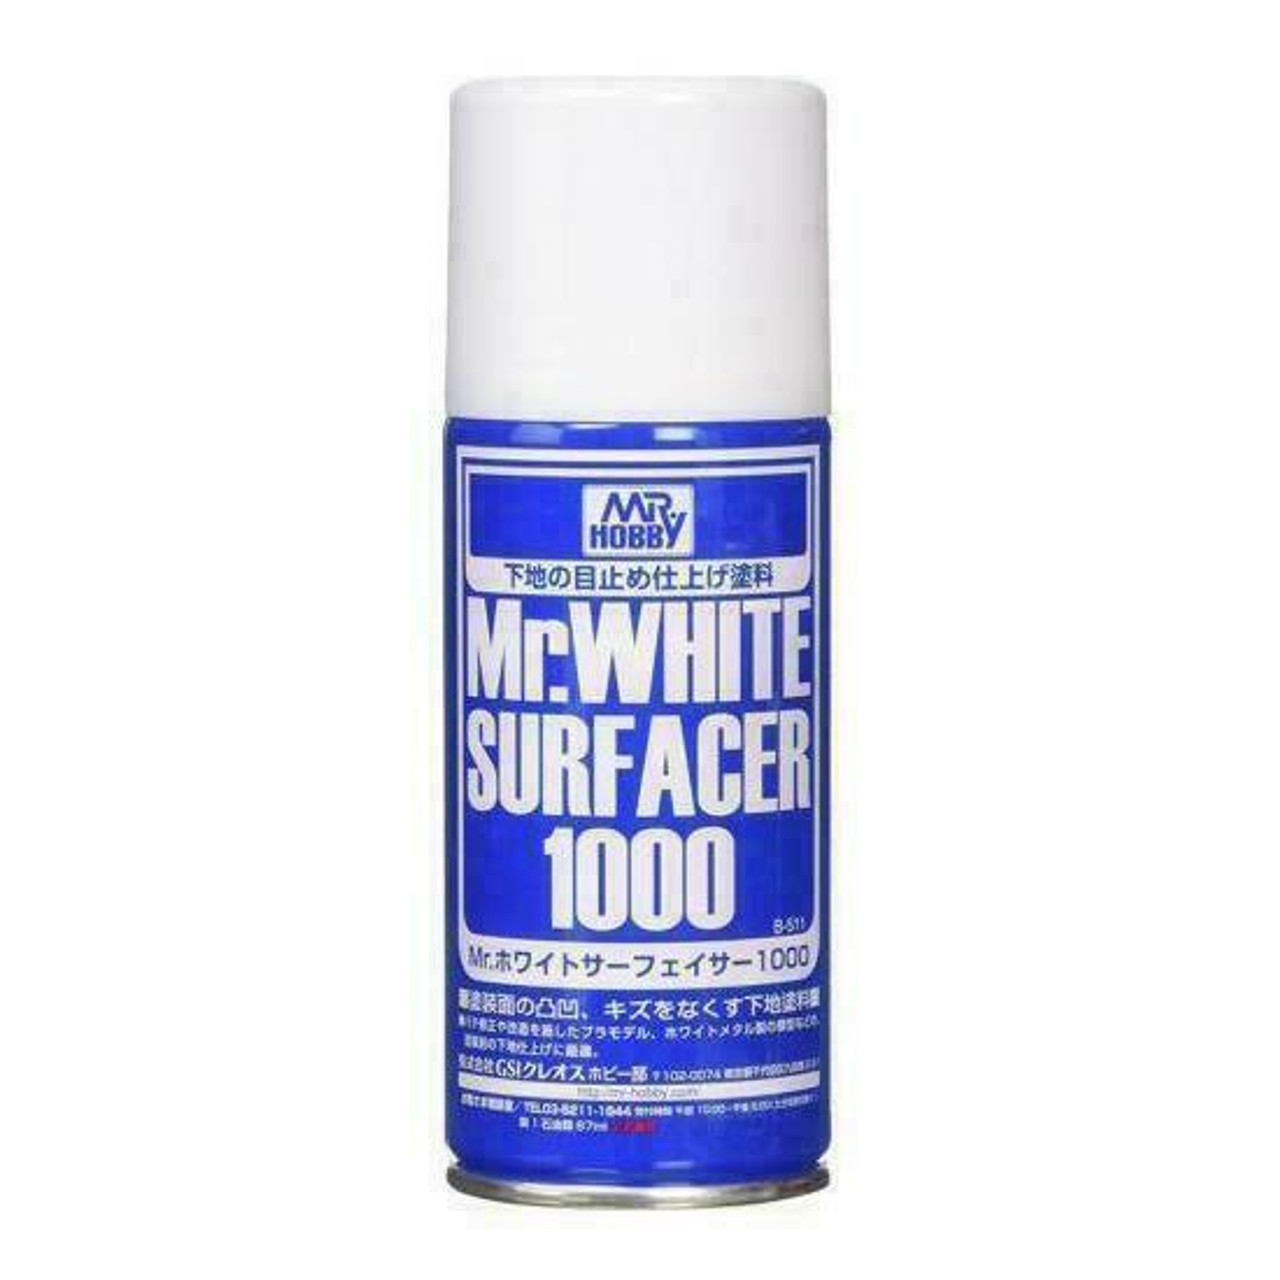 Mr. White Surfacer 1000 Spray, GSI